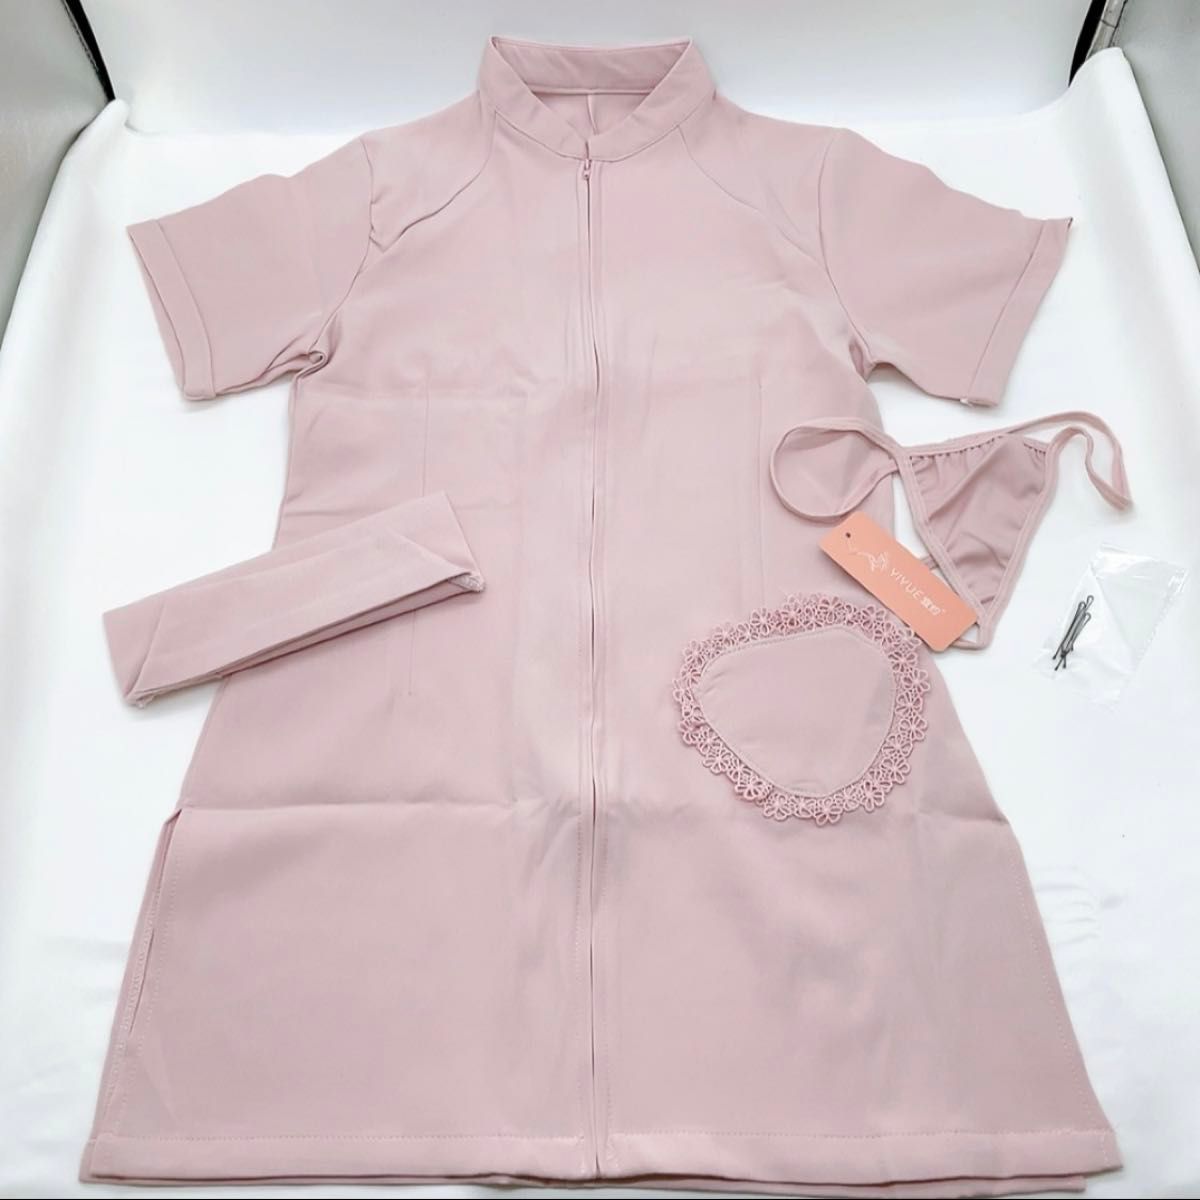 【ピンク】ナース服 コスプレ 衣装 ミニスカ セクシー コスチューム